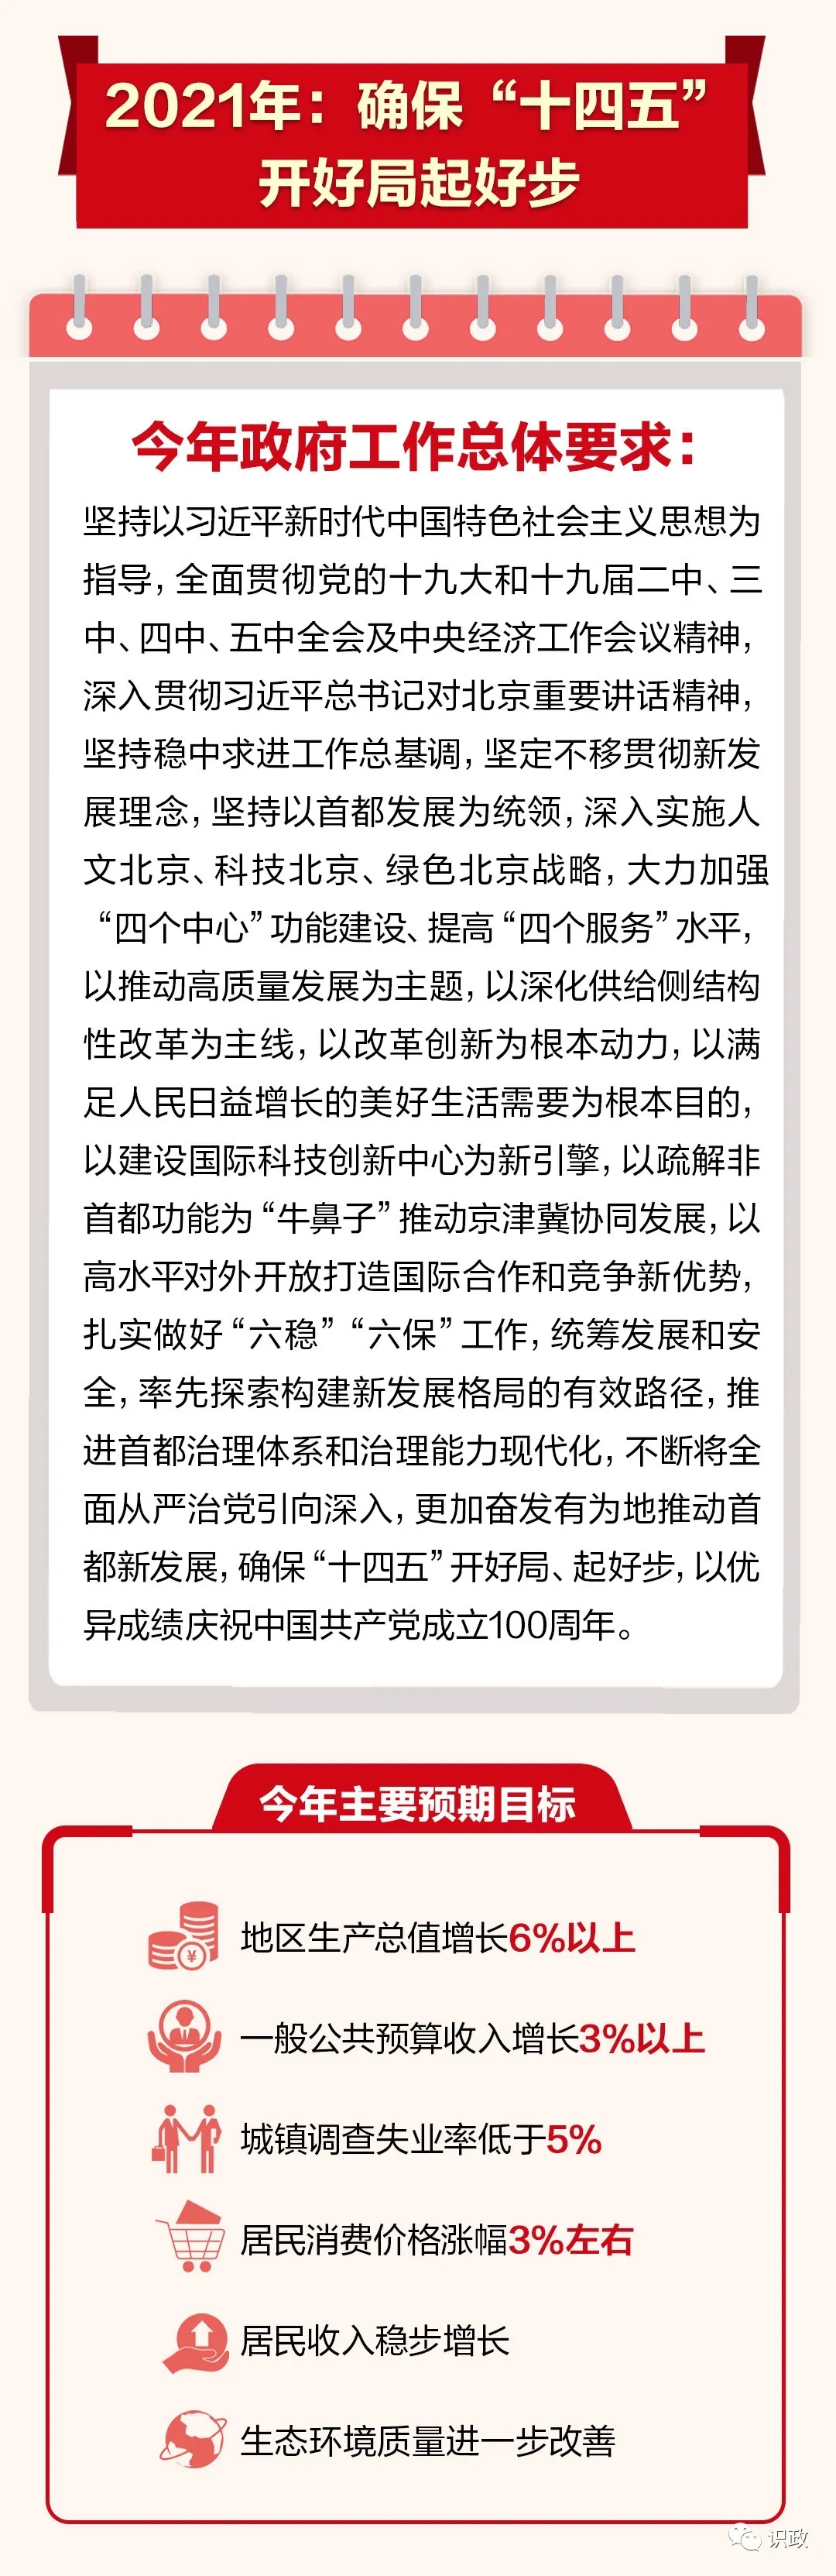 一图读懂北京市政府工作报告